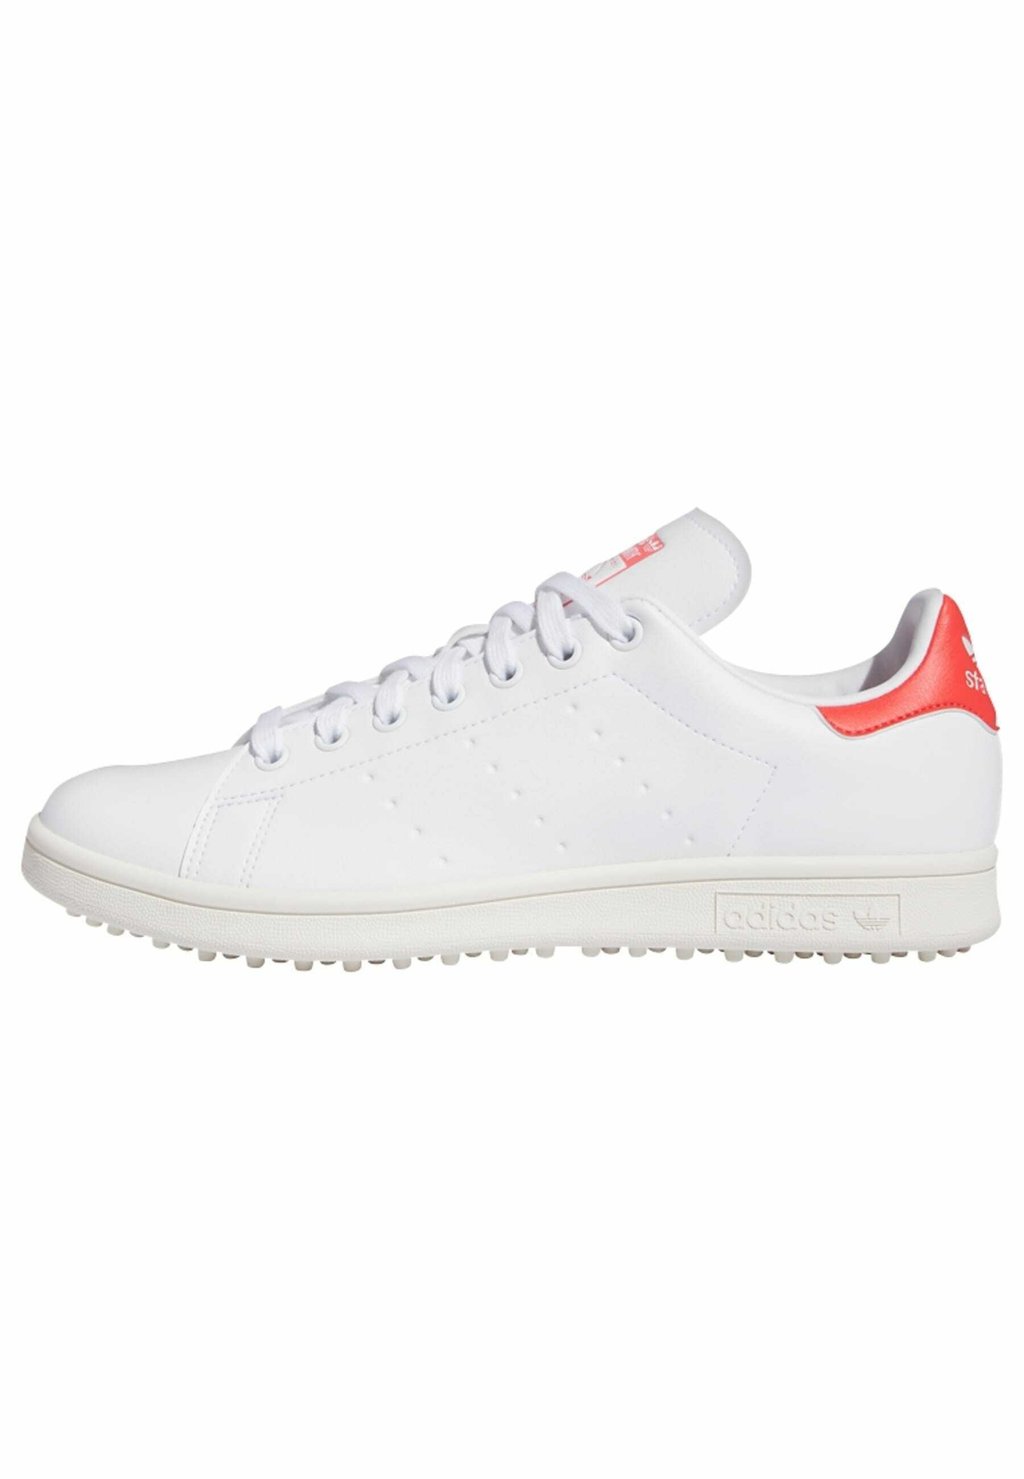 Обувь для гольфа Stan Smith Golf Shoe adidas Golf, цвет cloud white preloved scarlet off white